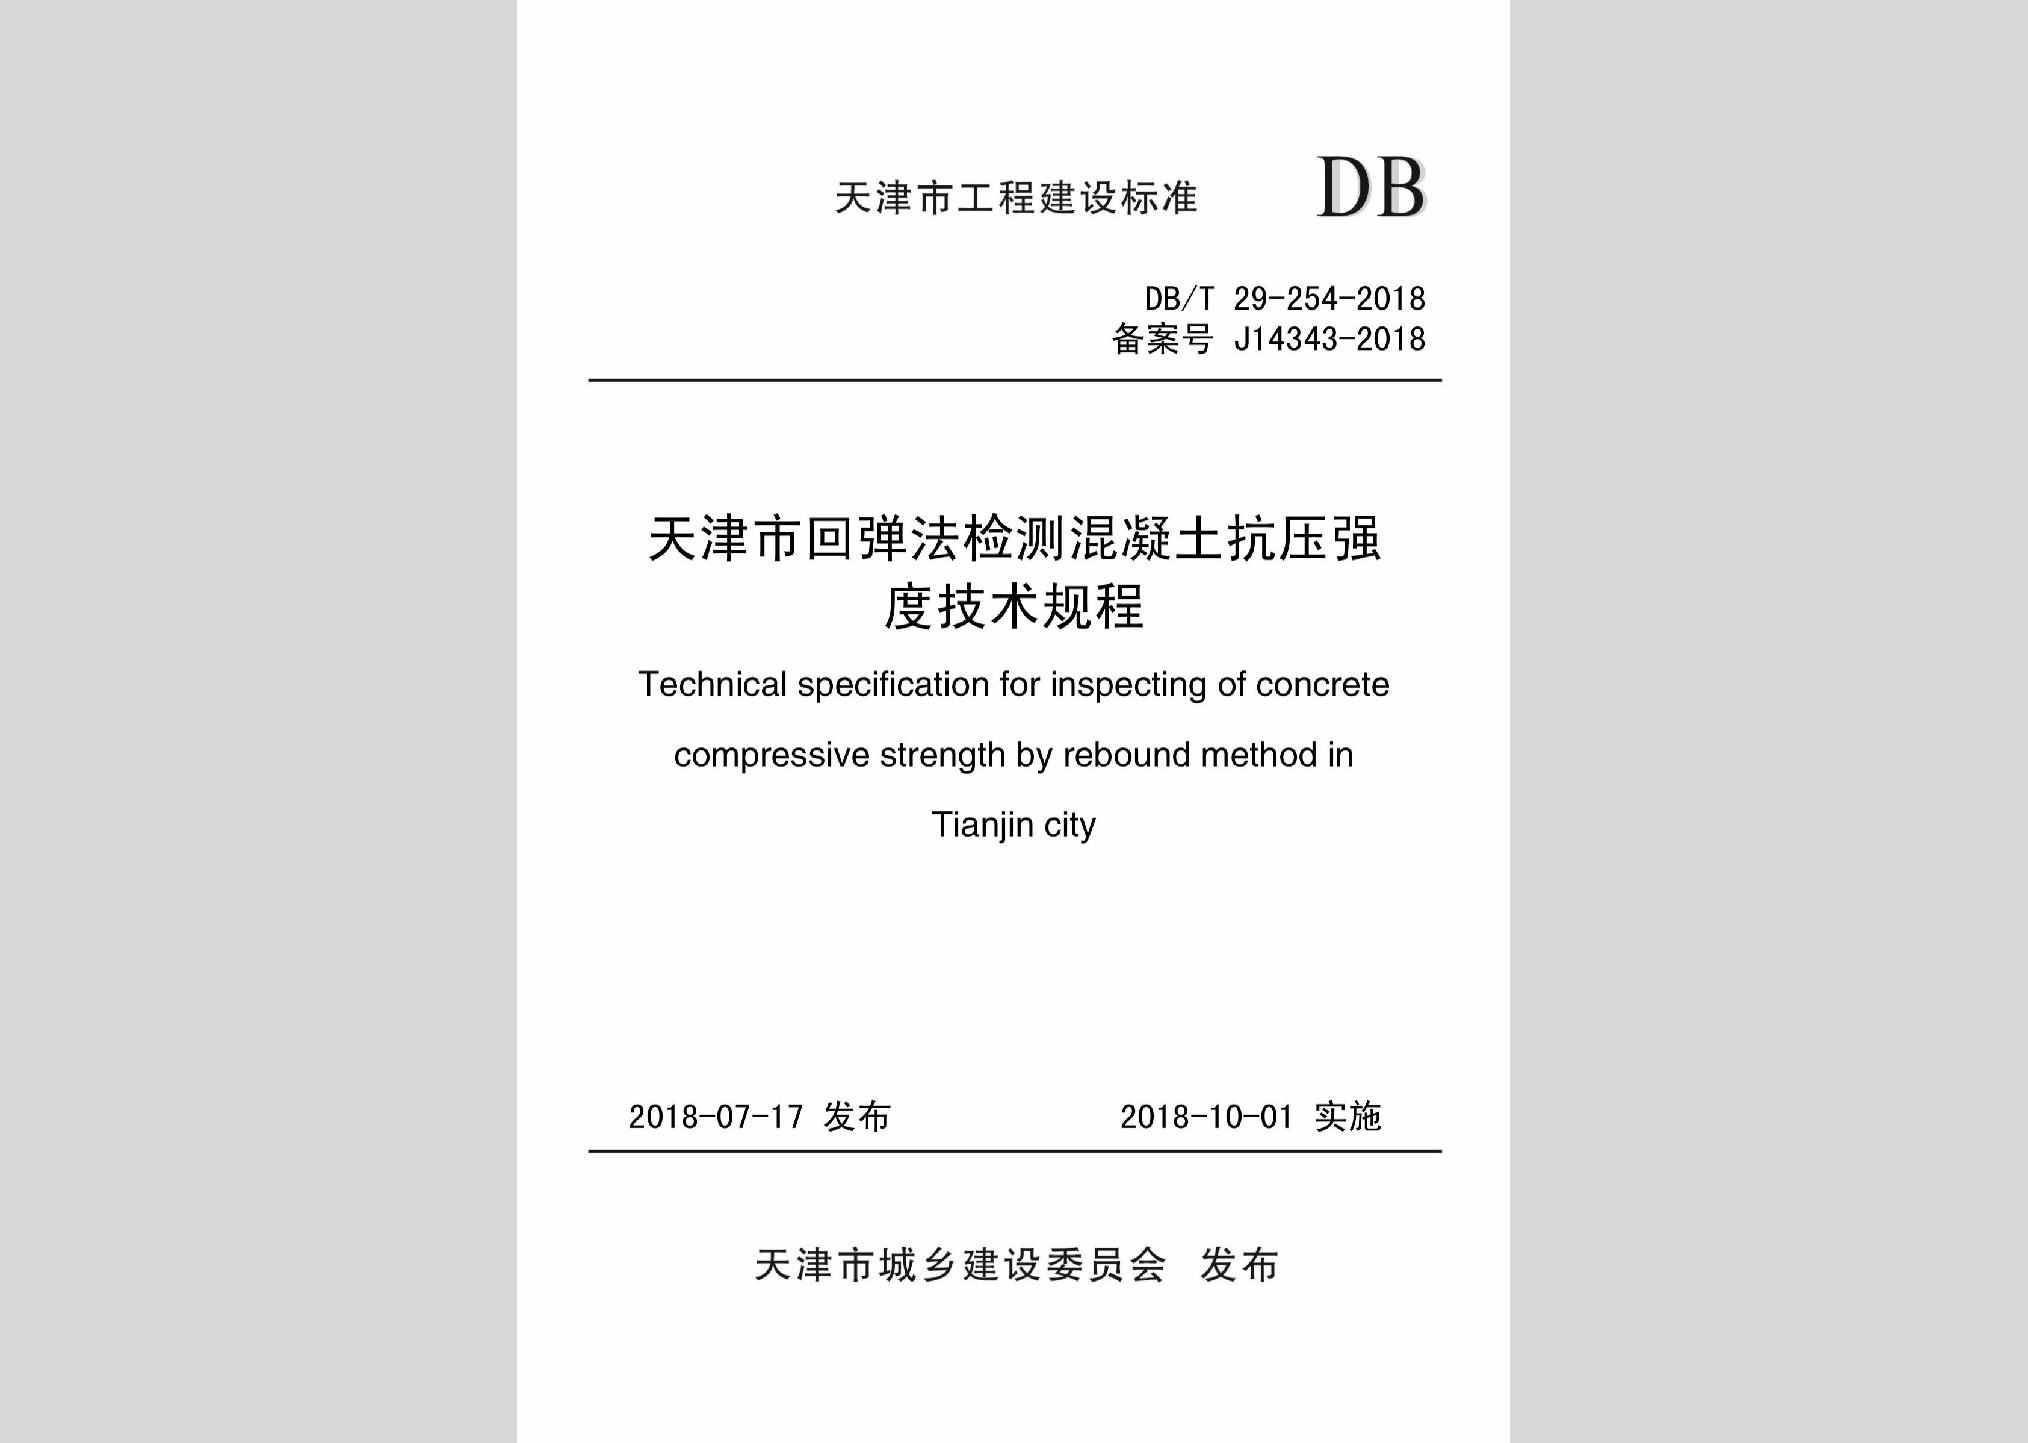 DB/T29-254-2018：天津市回弹法检测混凝土抗压强度技术规程